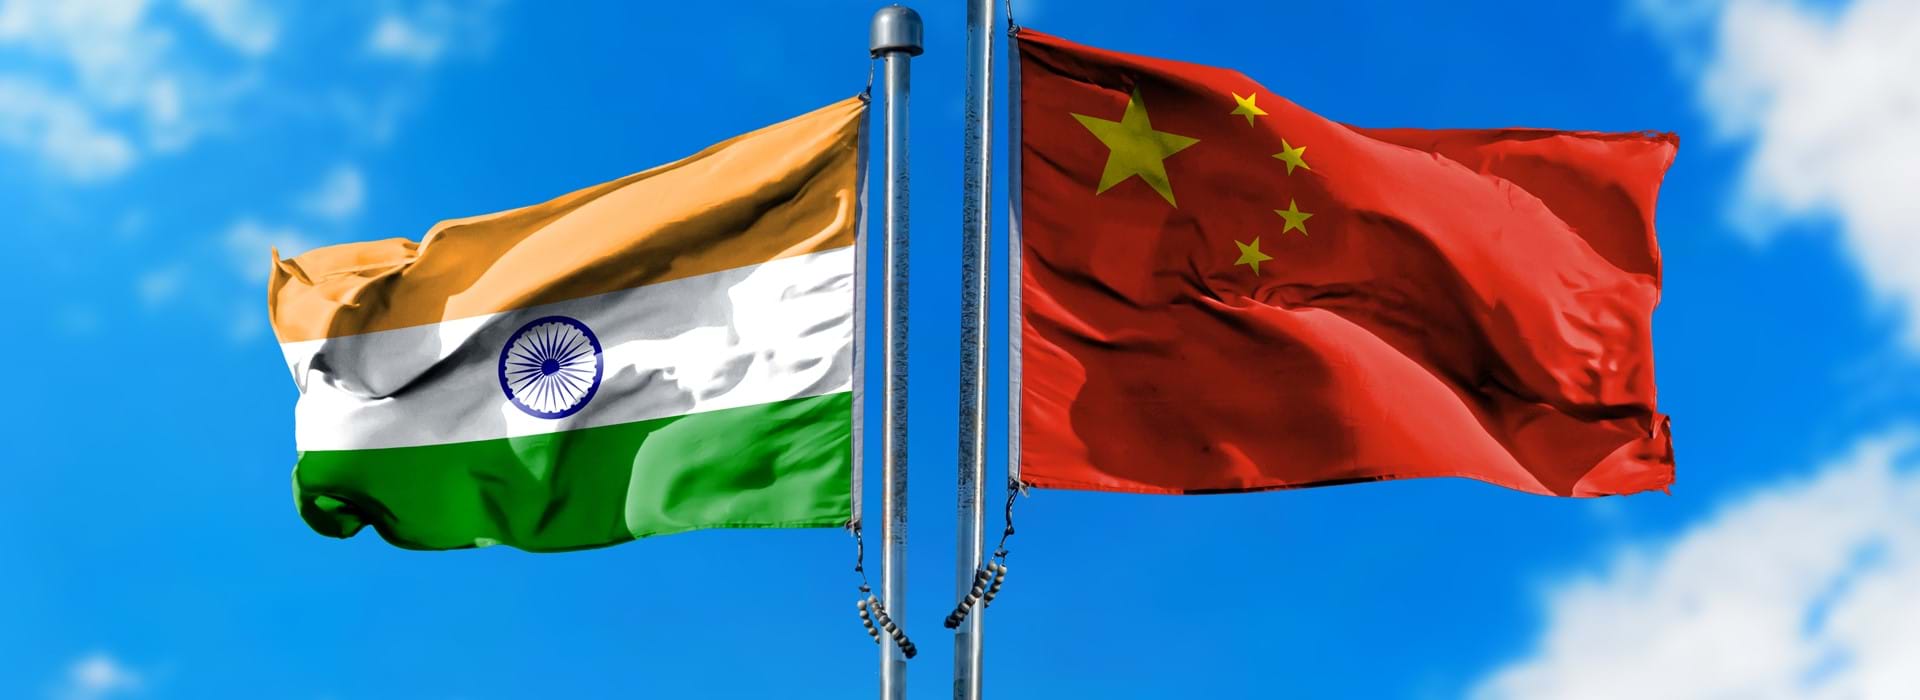 Wordt India het nieuwe China?